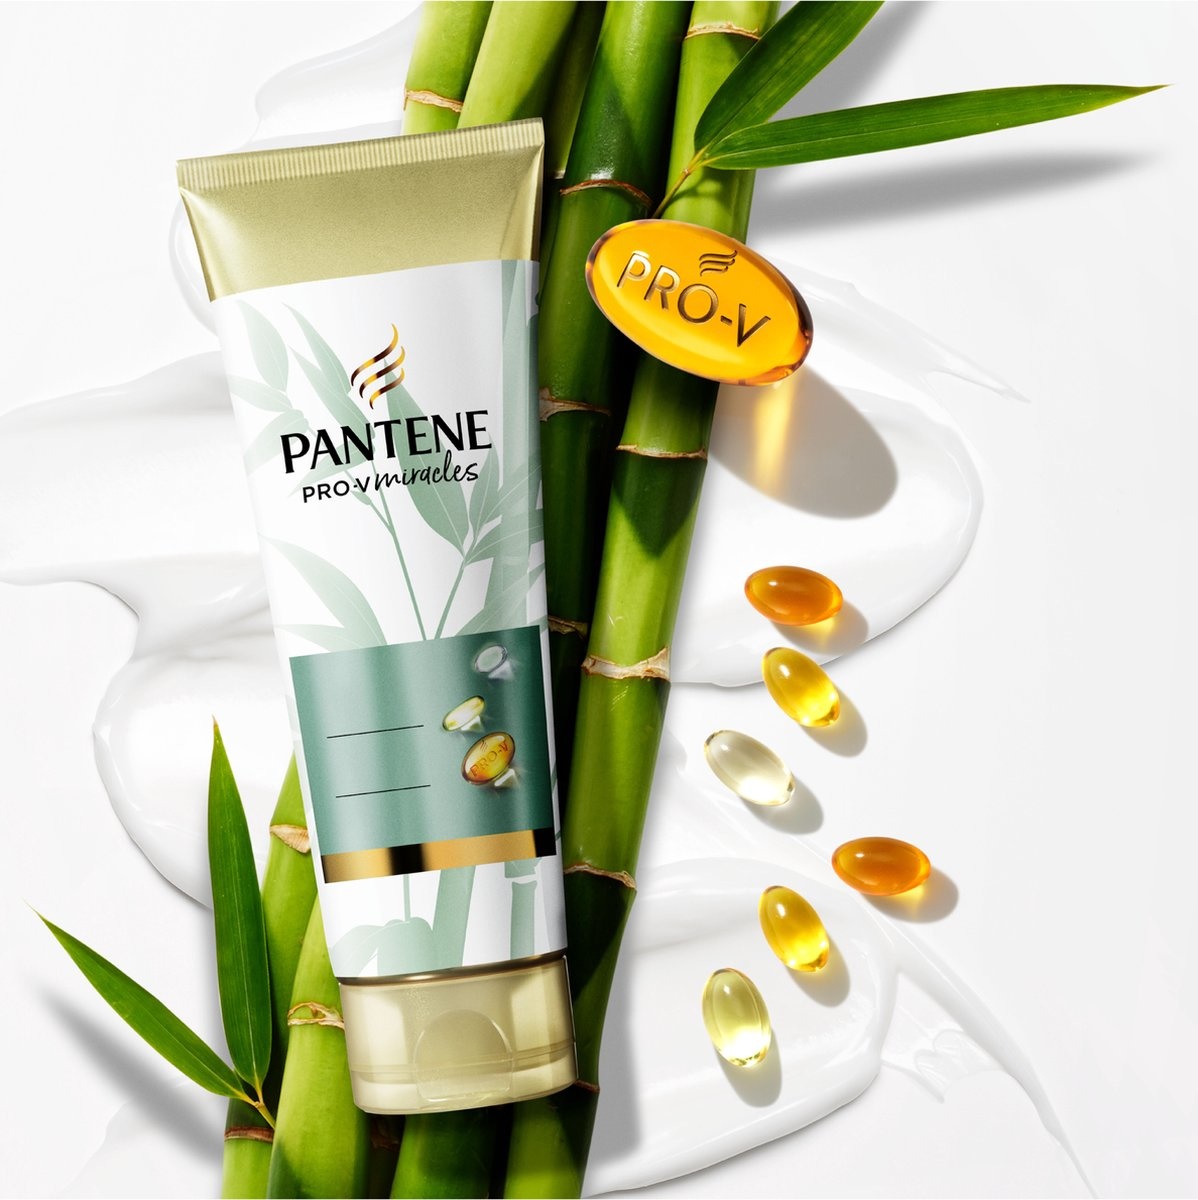 Pantene Pro-V Miracles Conditioner mit Bambus und Biotin reduziert Haarausfall – Vorteilspack – 160 ml